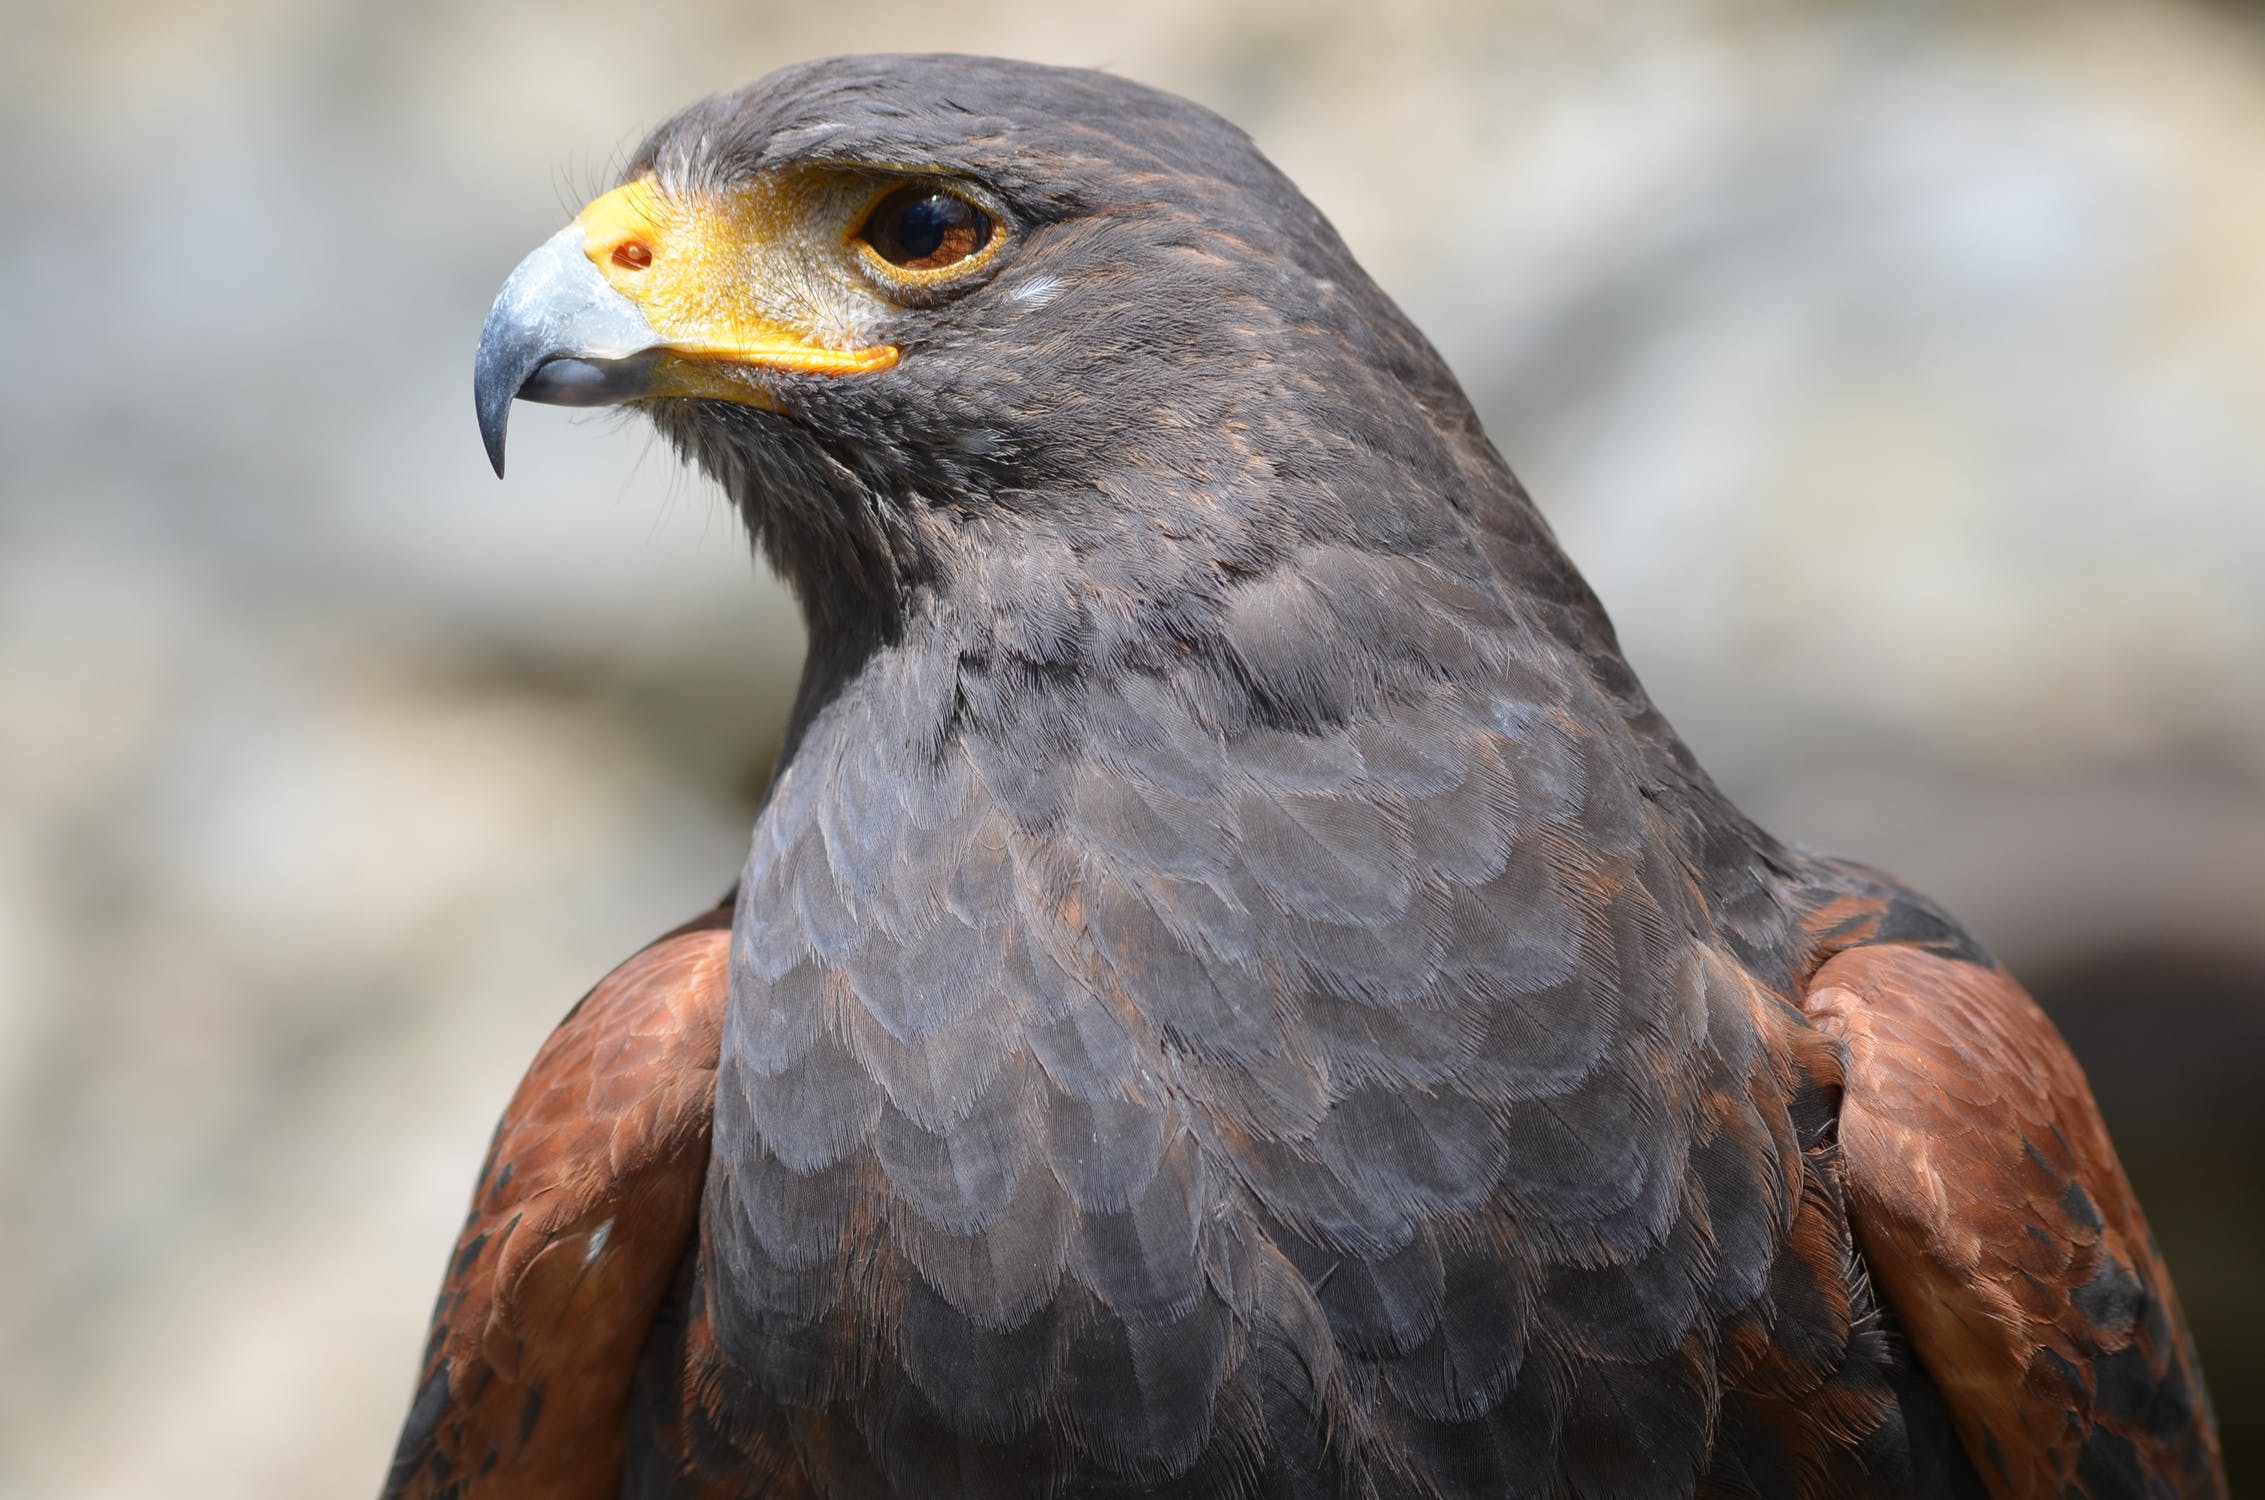 A close up photo of a hawk